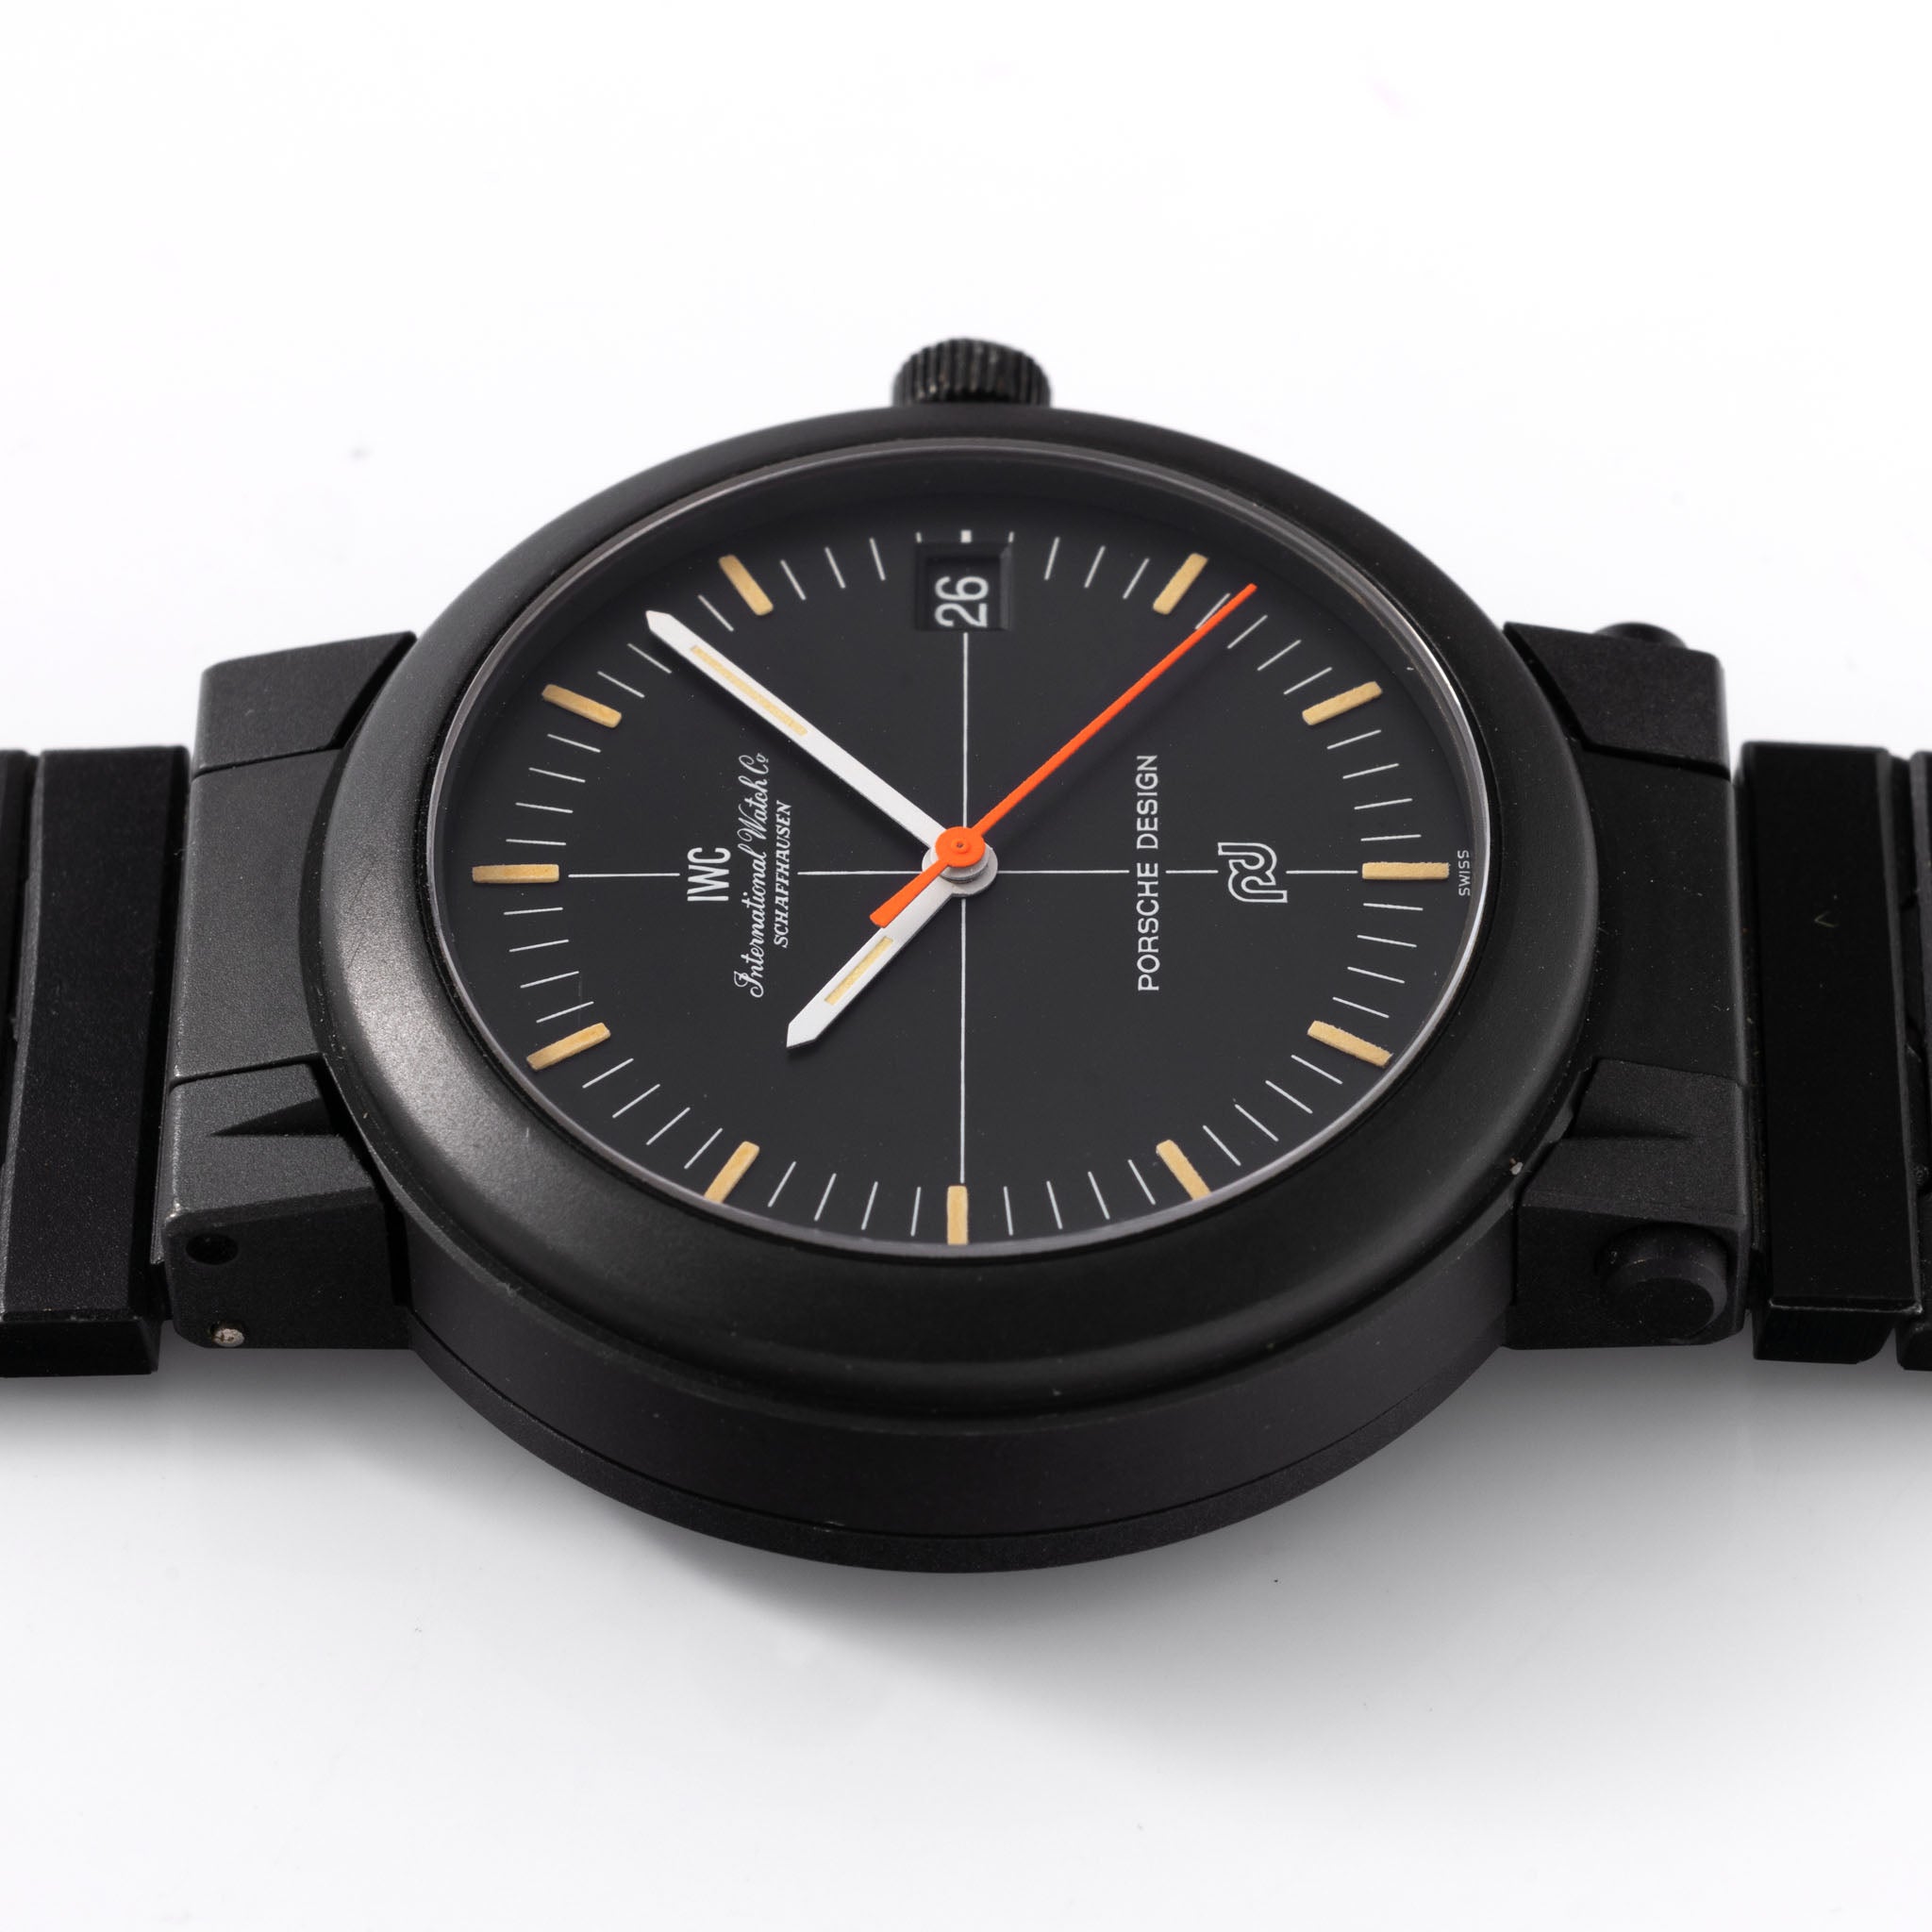 Porsche Design by IWC Compass Watch ref. 3510 Unworn With Box